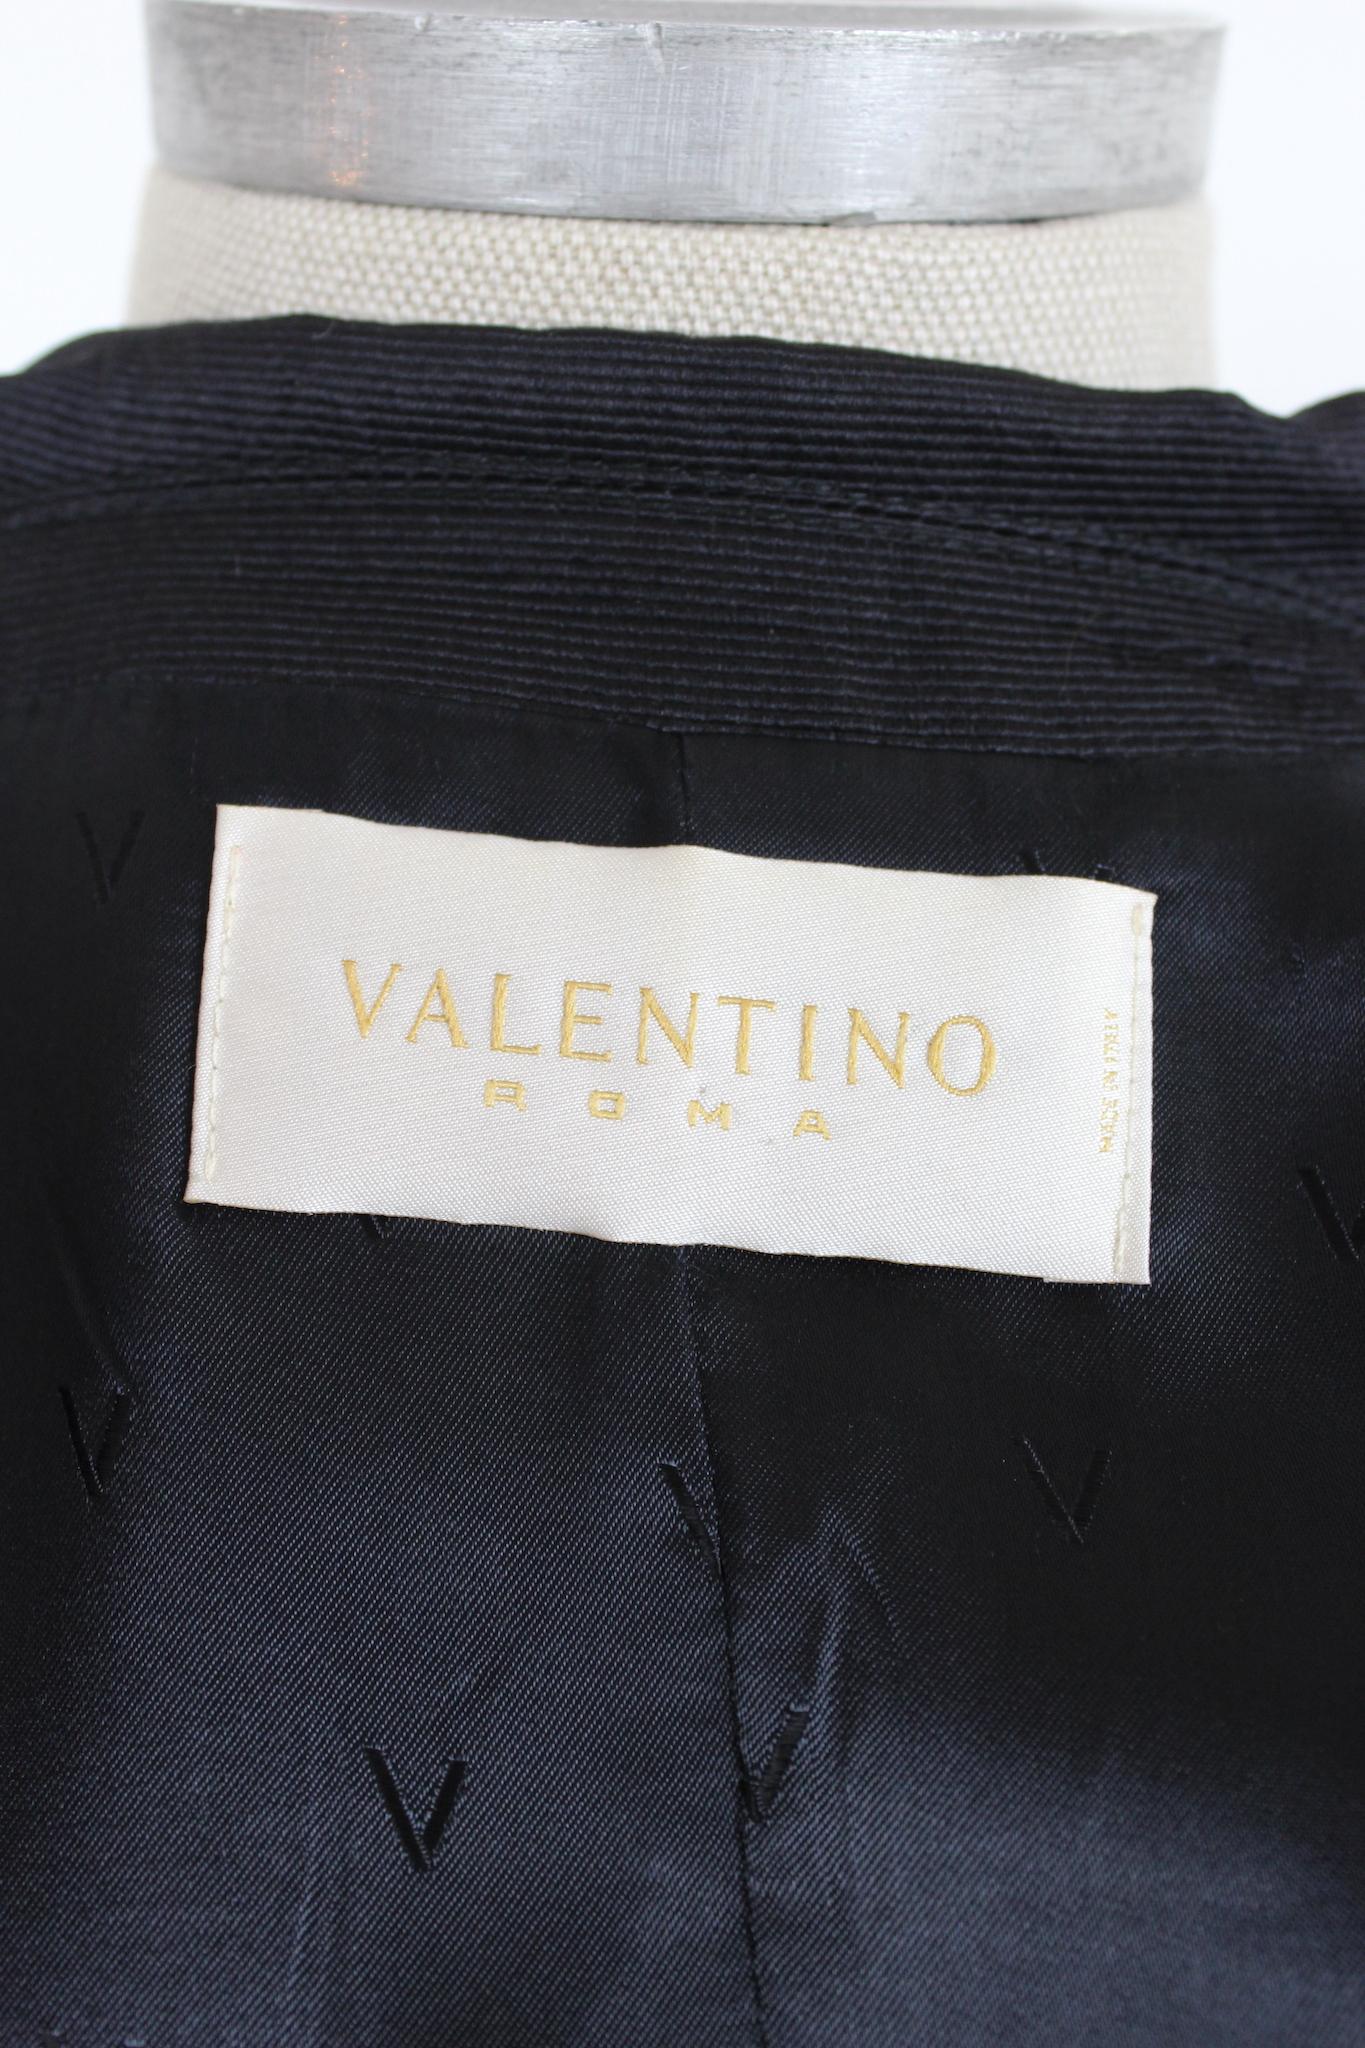 Cette veste noire brillante de Valentino est élégante et raffinée. La coupe ajustée et la taille élastiquée offrent un ajustement flatteur et confortable, ce qui le rend parfait pour toute soirée. La couleur noire brillante est intemporelle. Cette